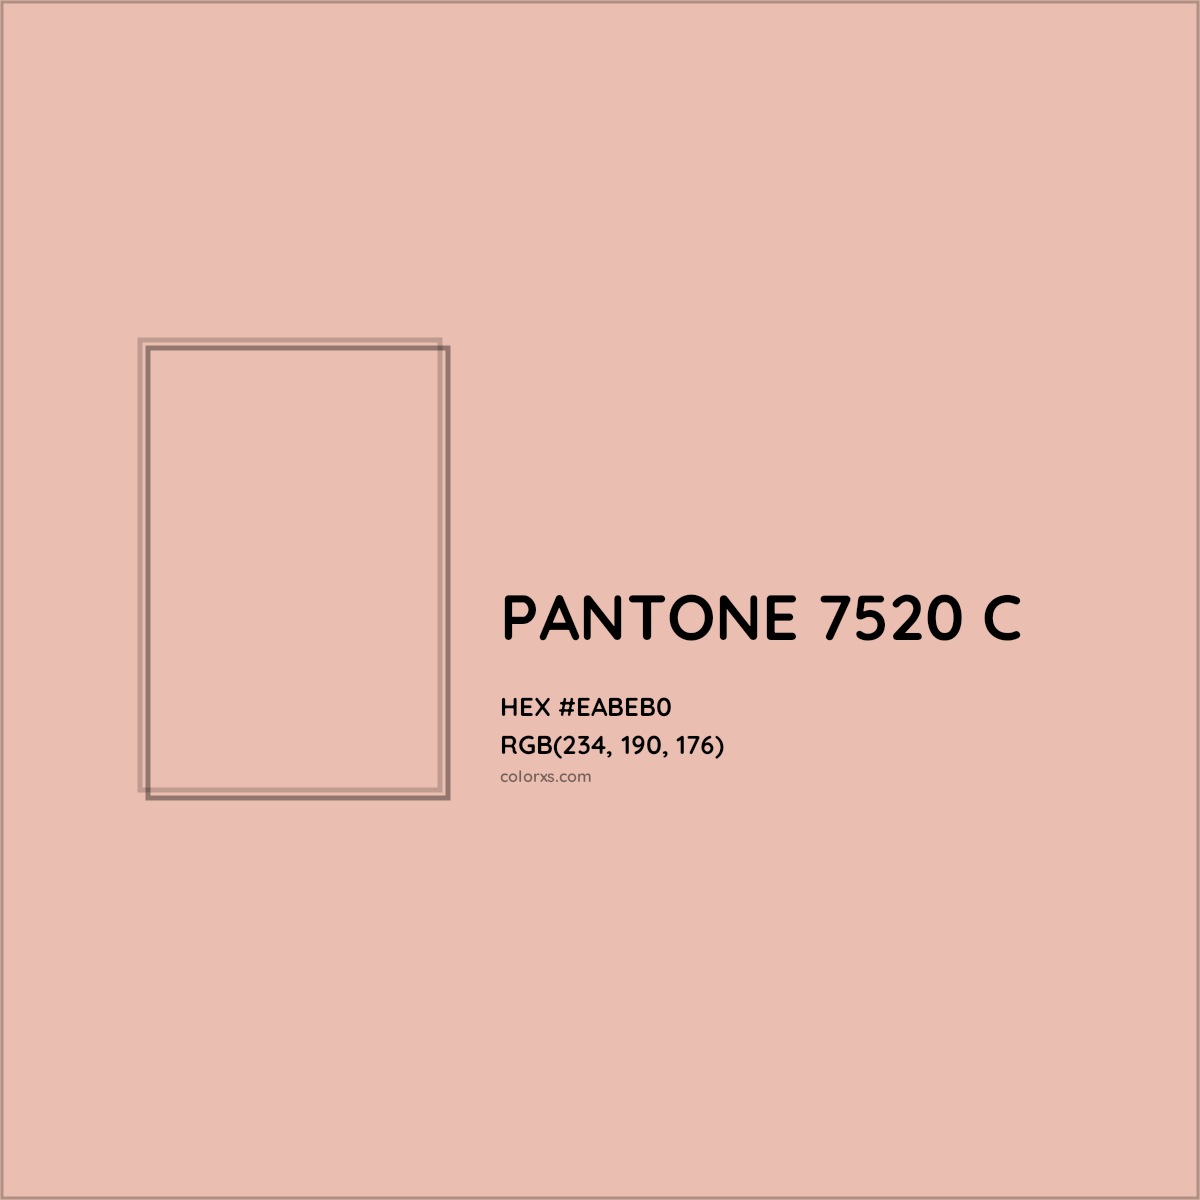 HEX #EABEB0 PANTONE 7520 C CMS Pantone PMS - Color Code